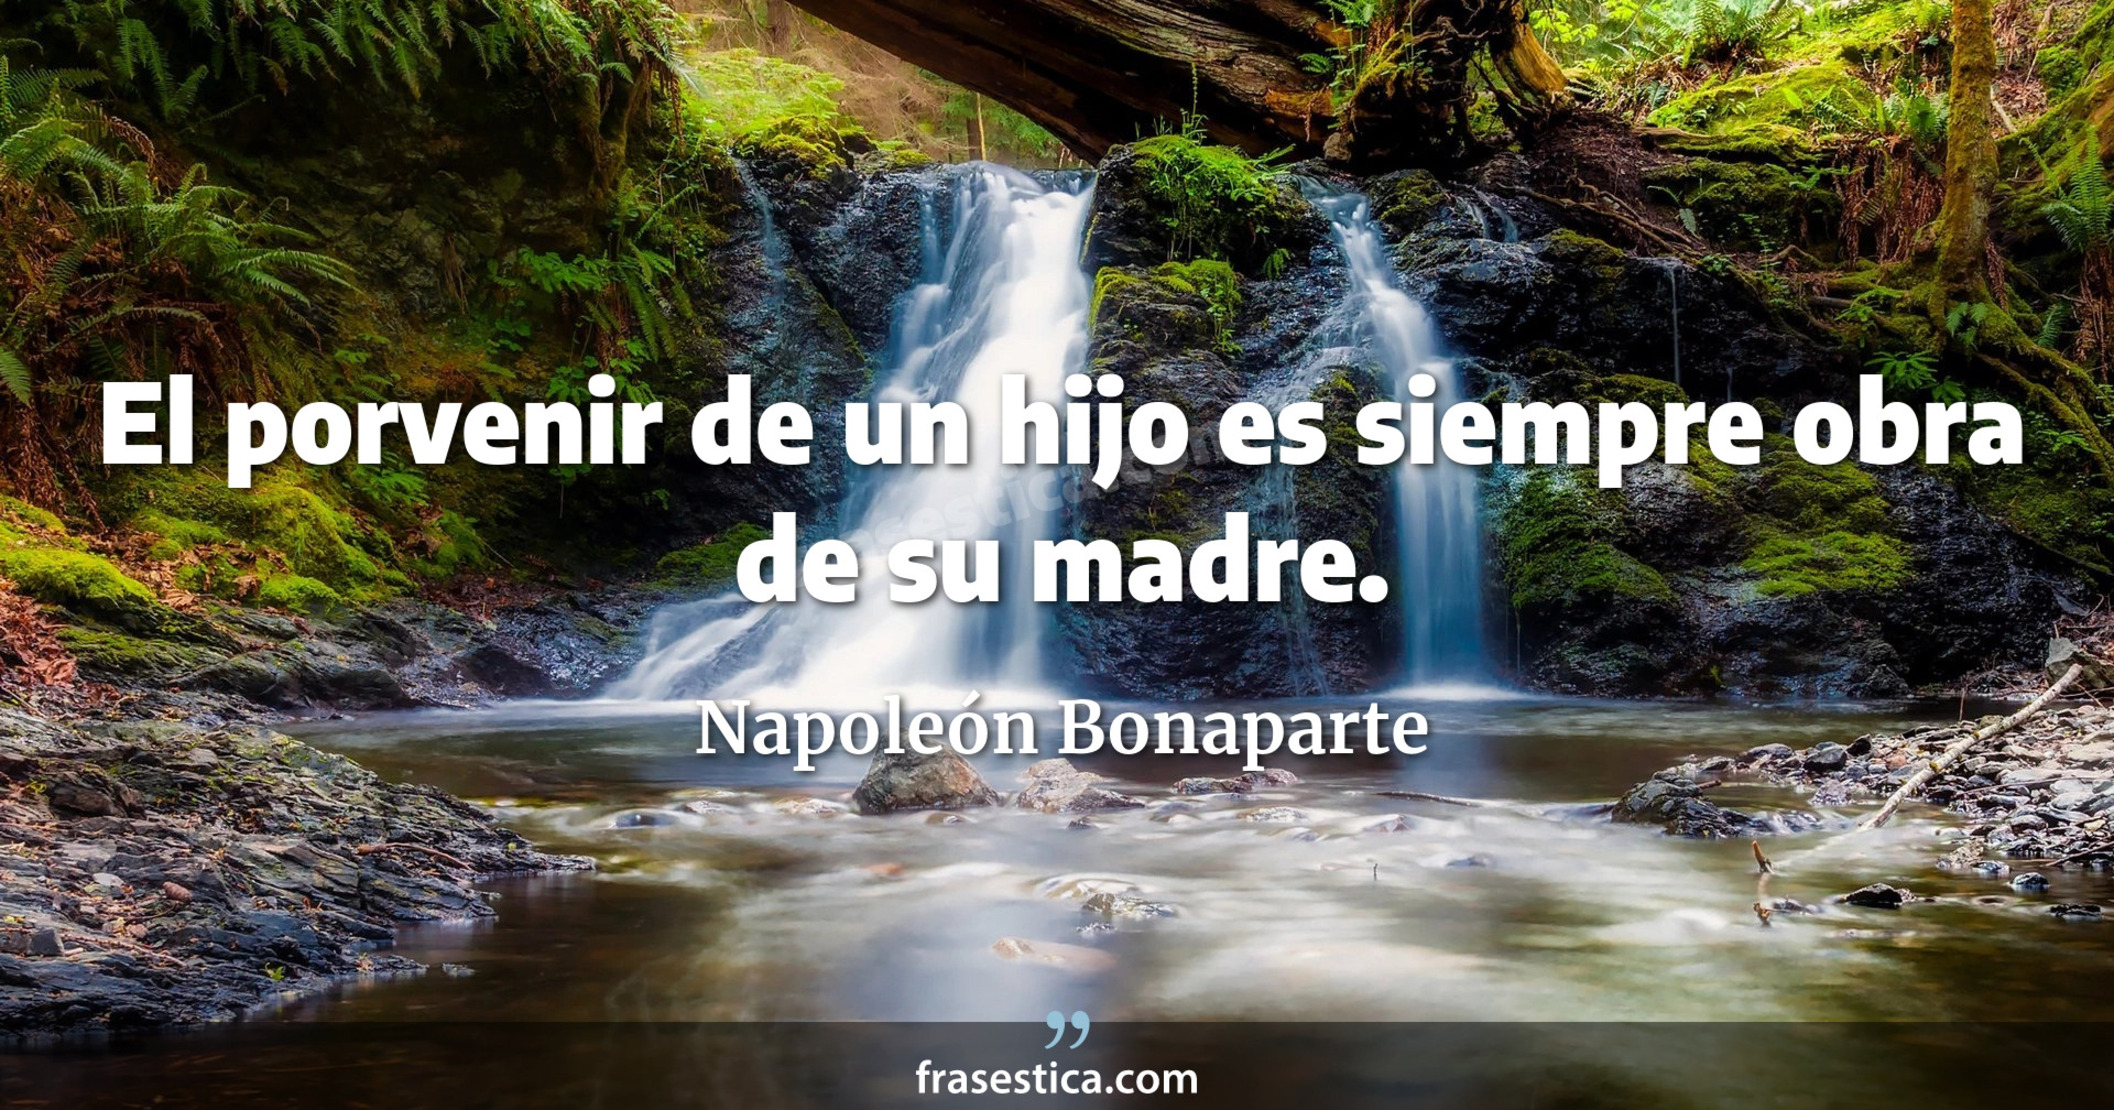 El porvenir de un hijo es siempre obra de su madre. - Napoleón Bonaparte